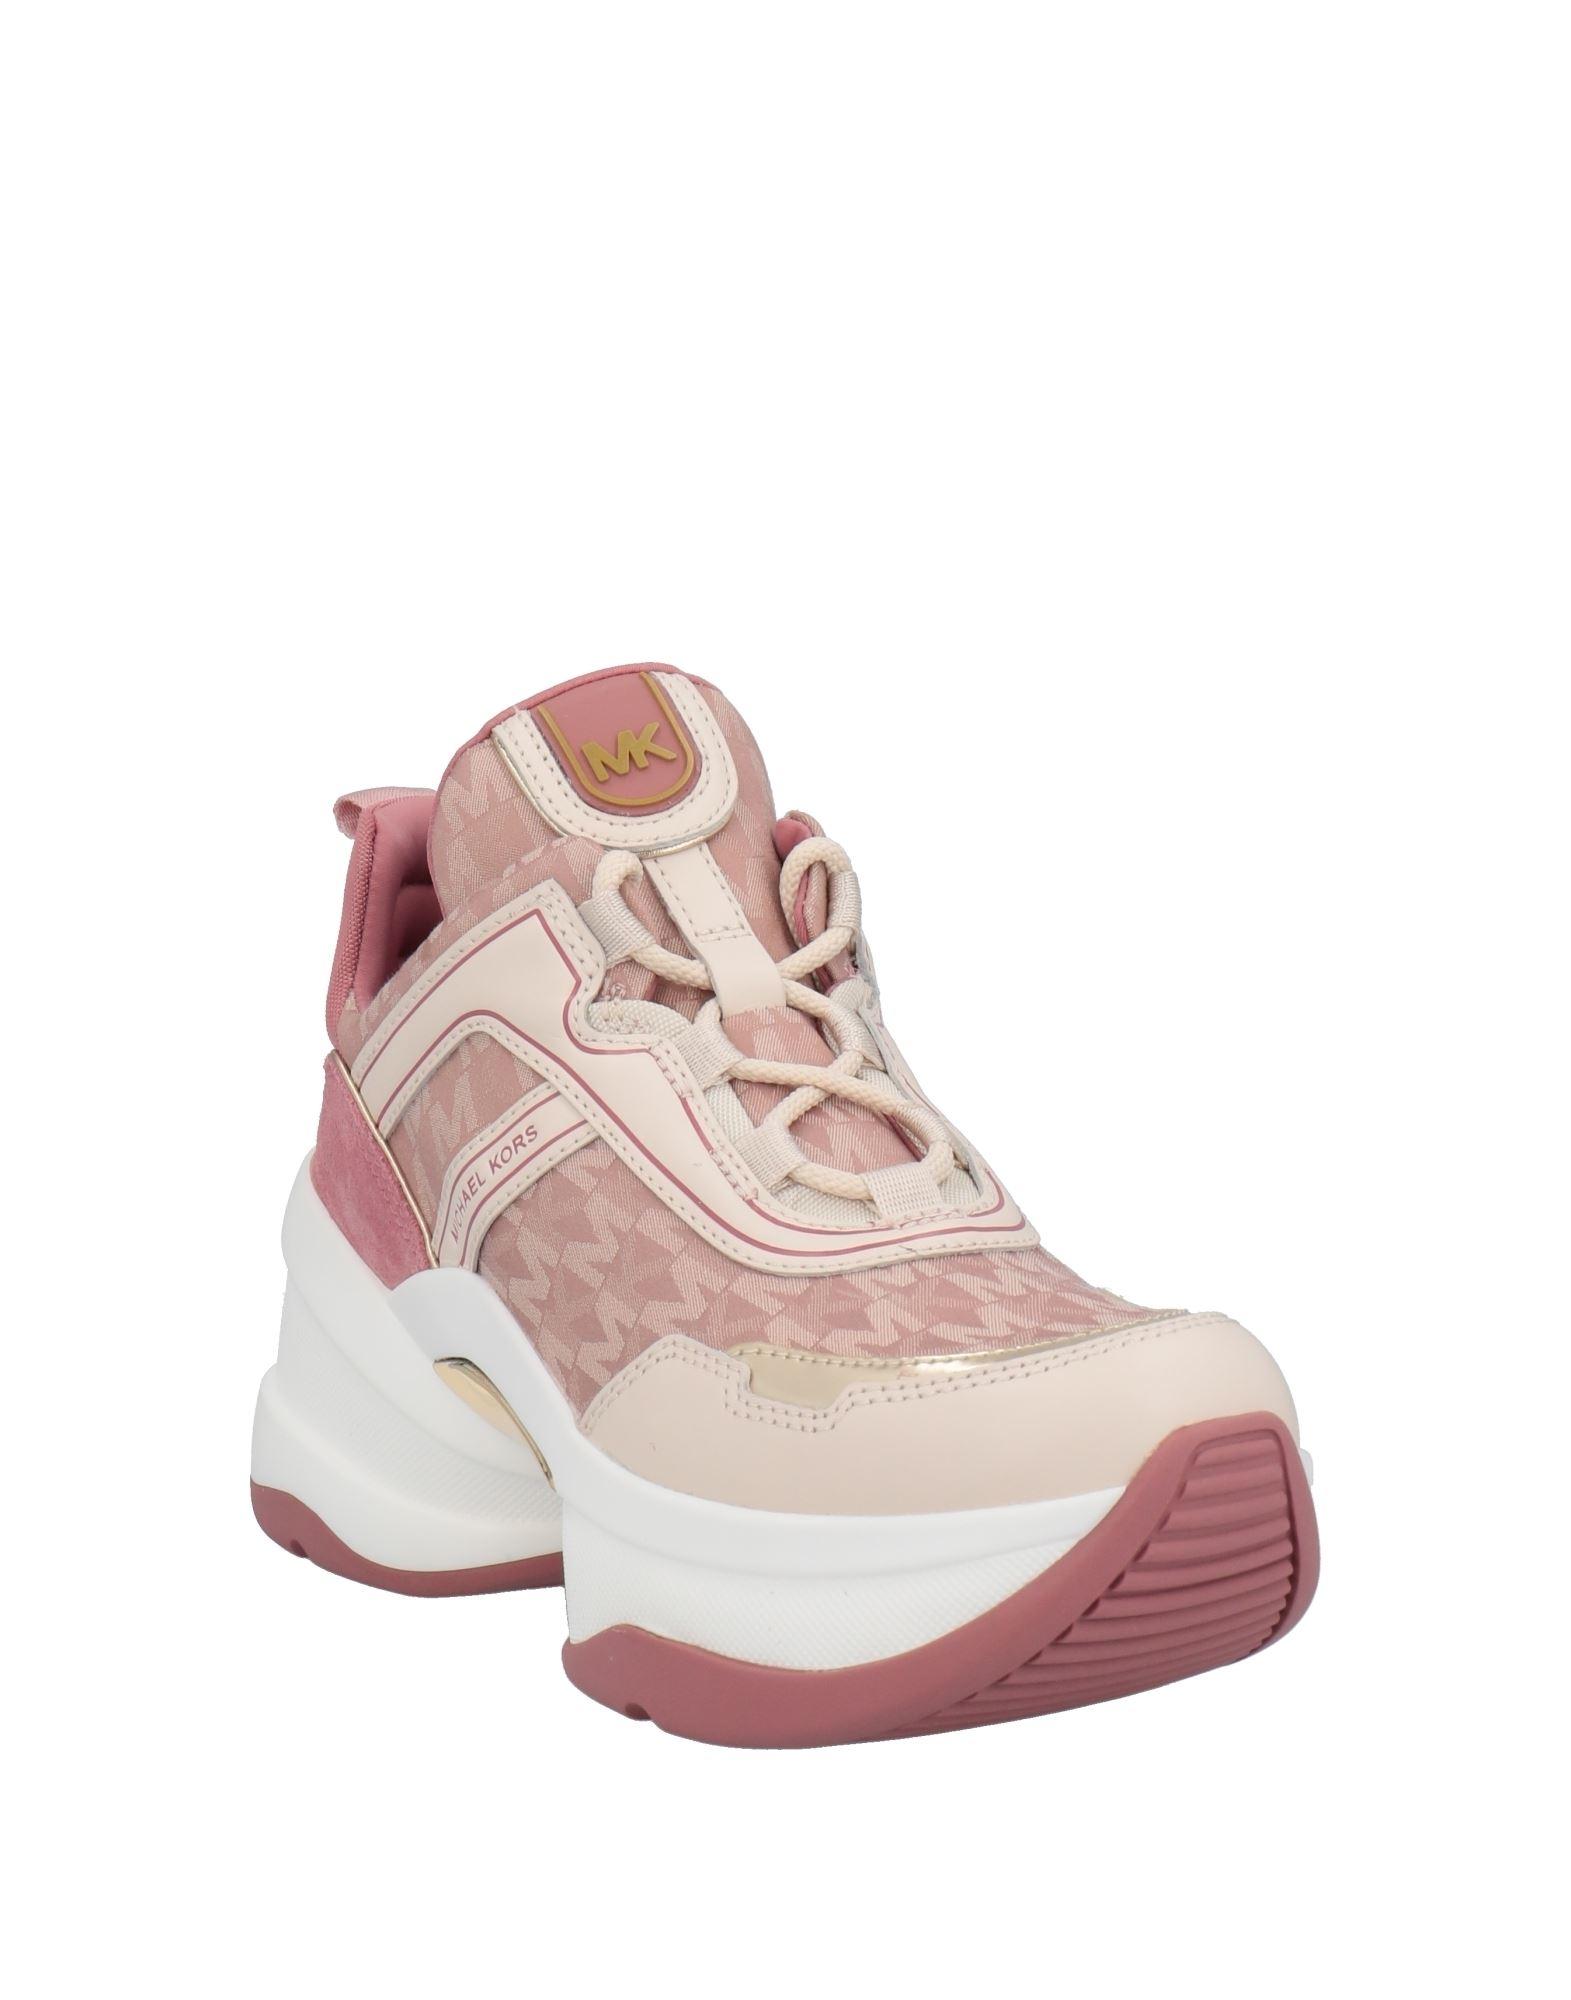 MICHAEL Kors Sneakers Pink | Lyst